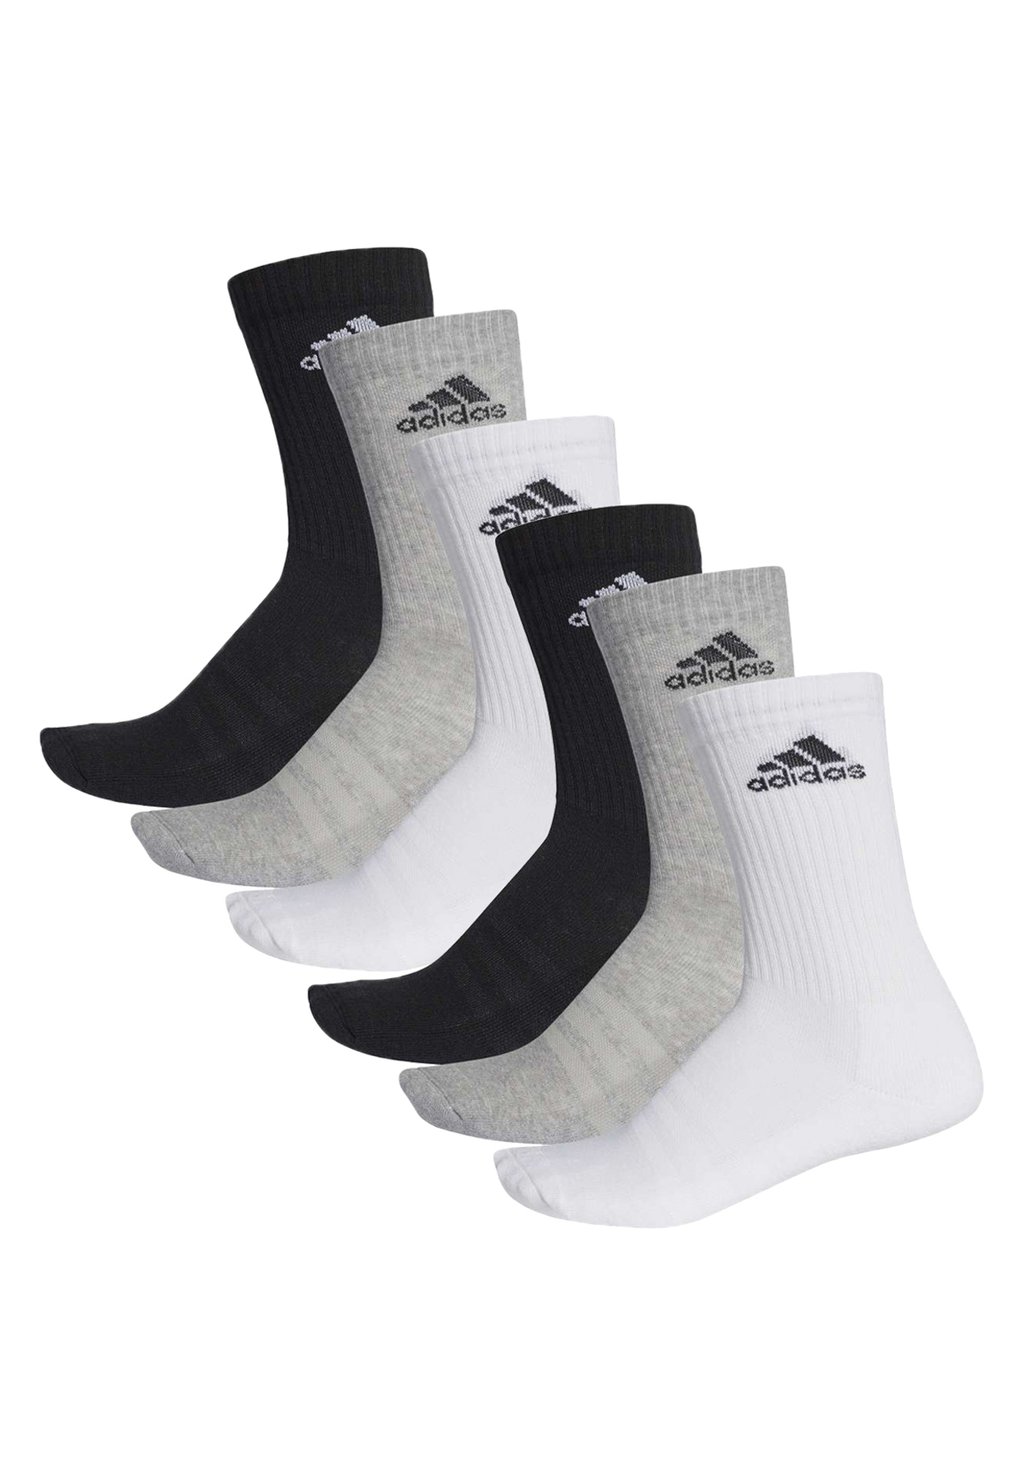 спортивные носки 6 pack unisex adidas performance цвет grey melange Спортивные носки 6 PACK UNISEX adidas Performance, цвет grey melange